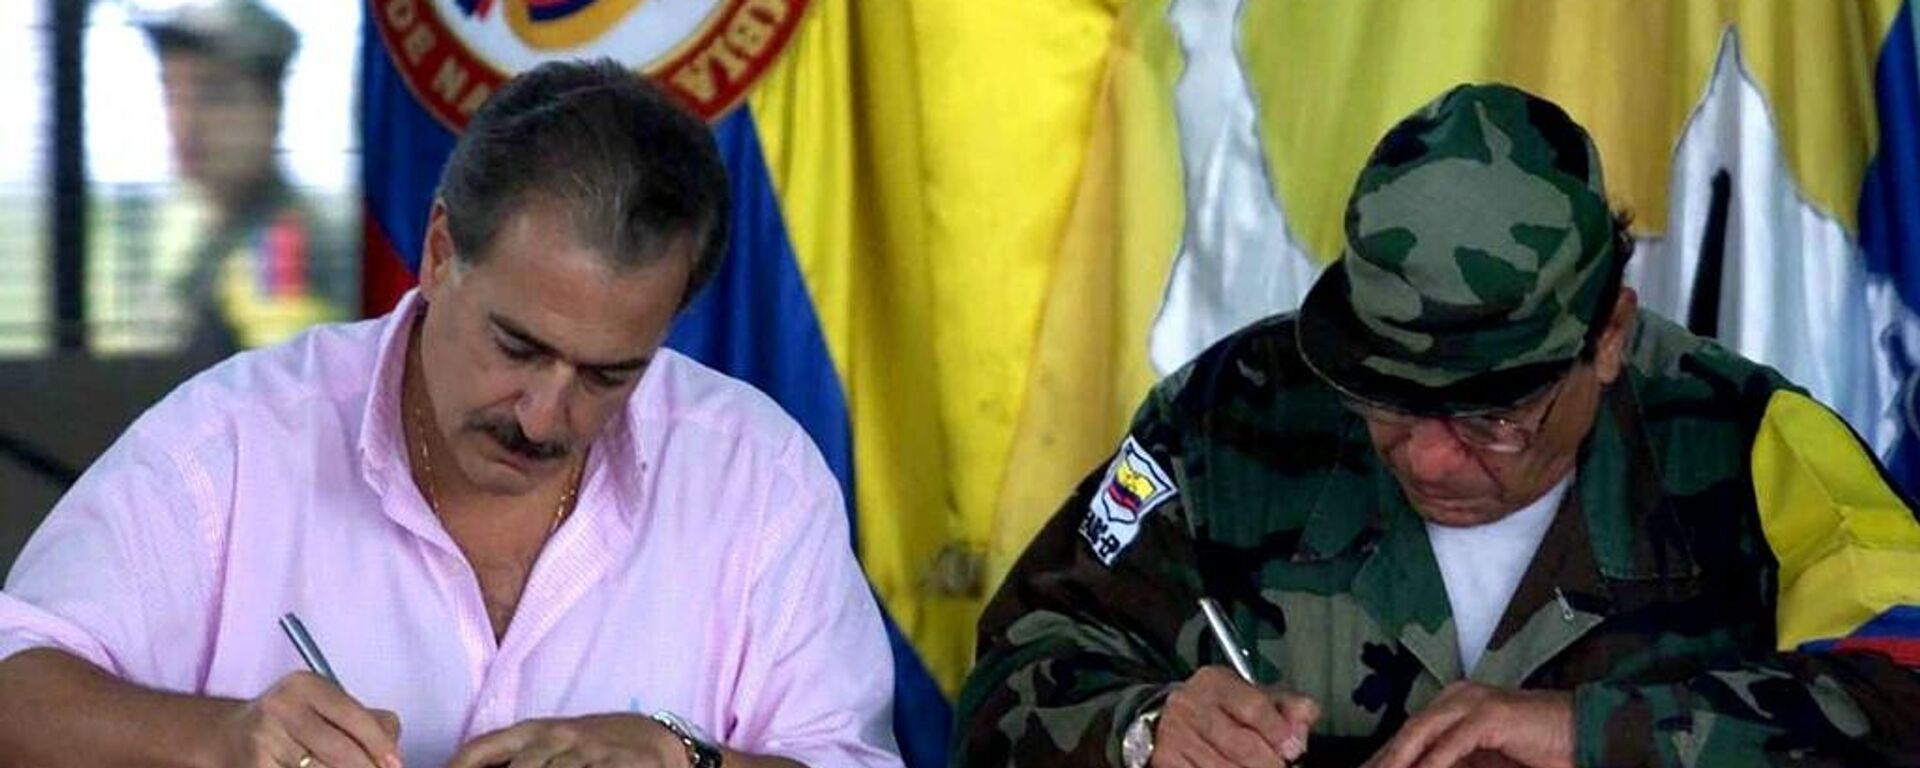 El presidente colombiano Andrés Pastrana y el líder de las FARC Manuel Marulanda firman un acuerdo de paz en febrero de 2001 - Sputnik Mundo, 1920, 24.11.2021